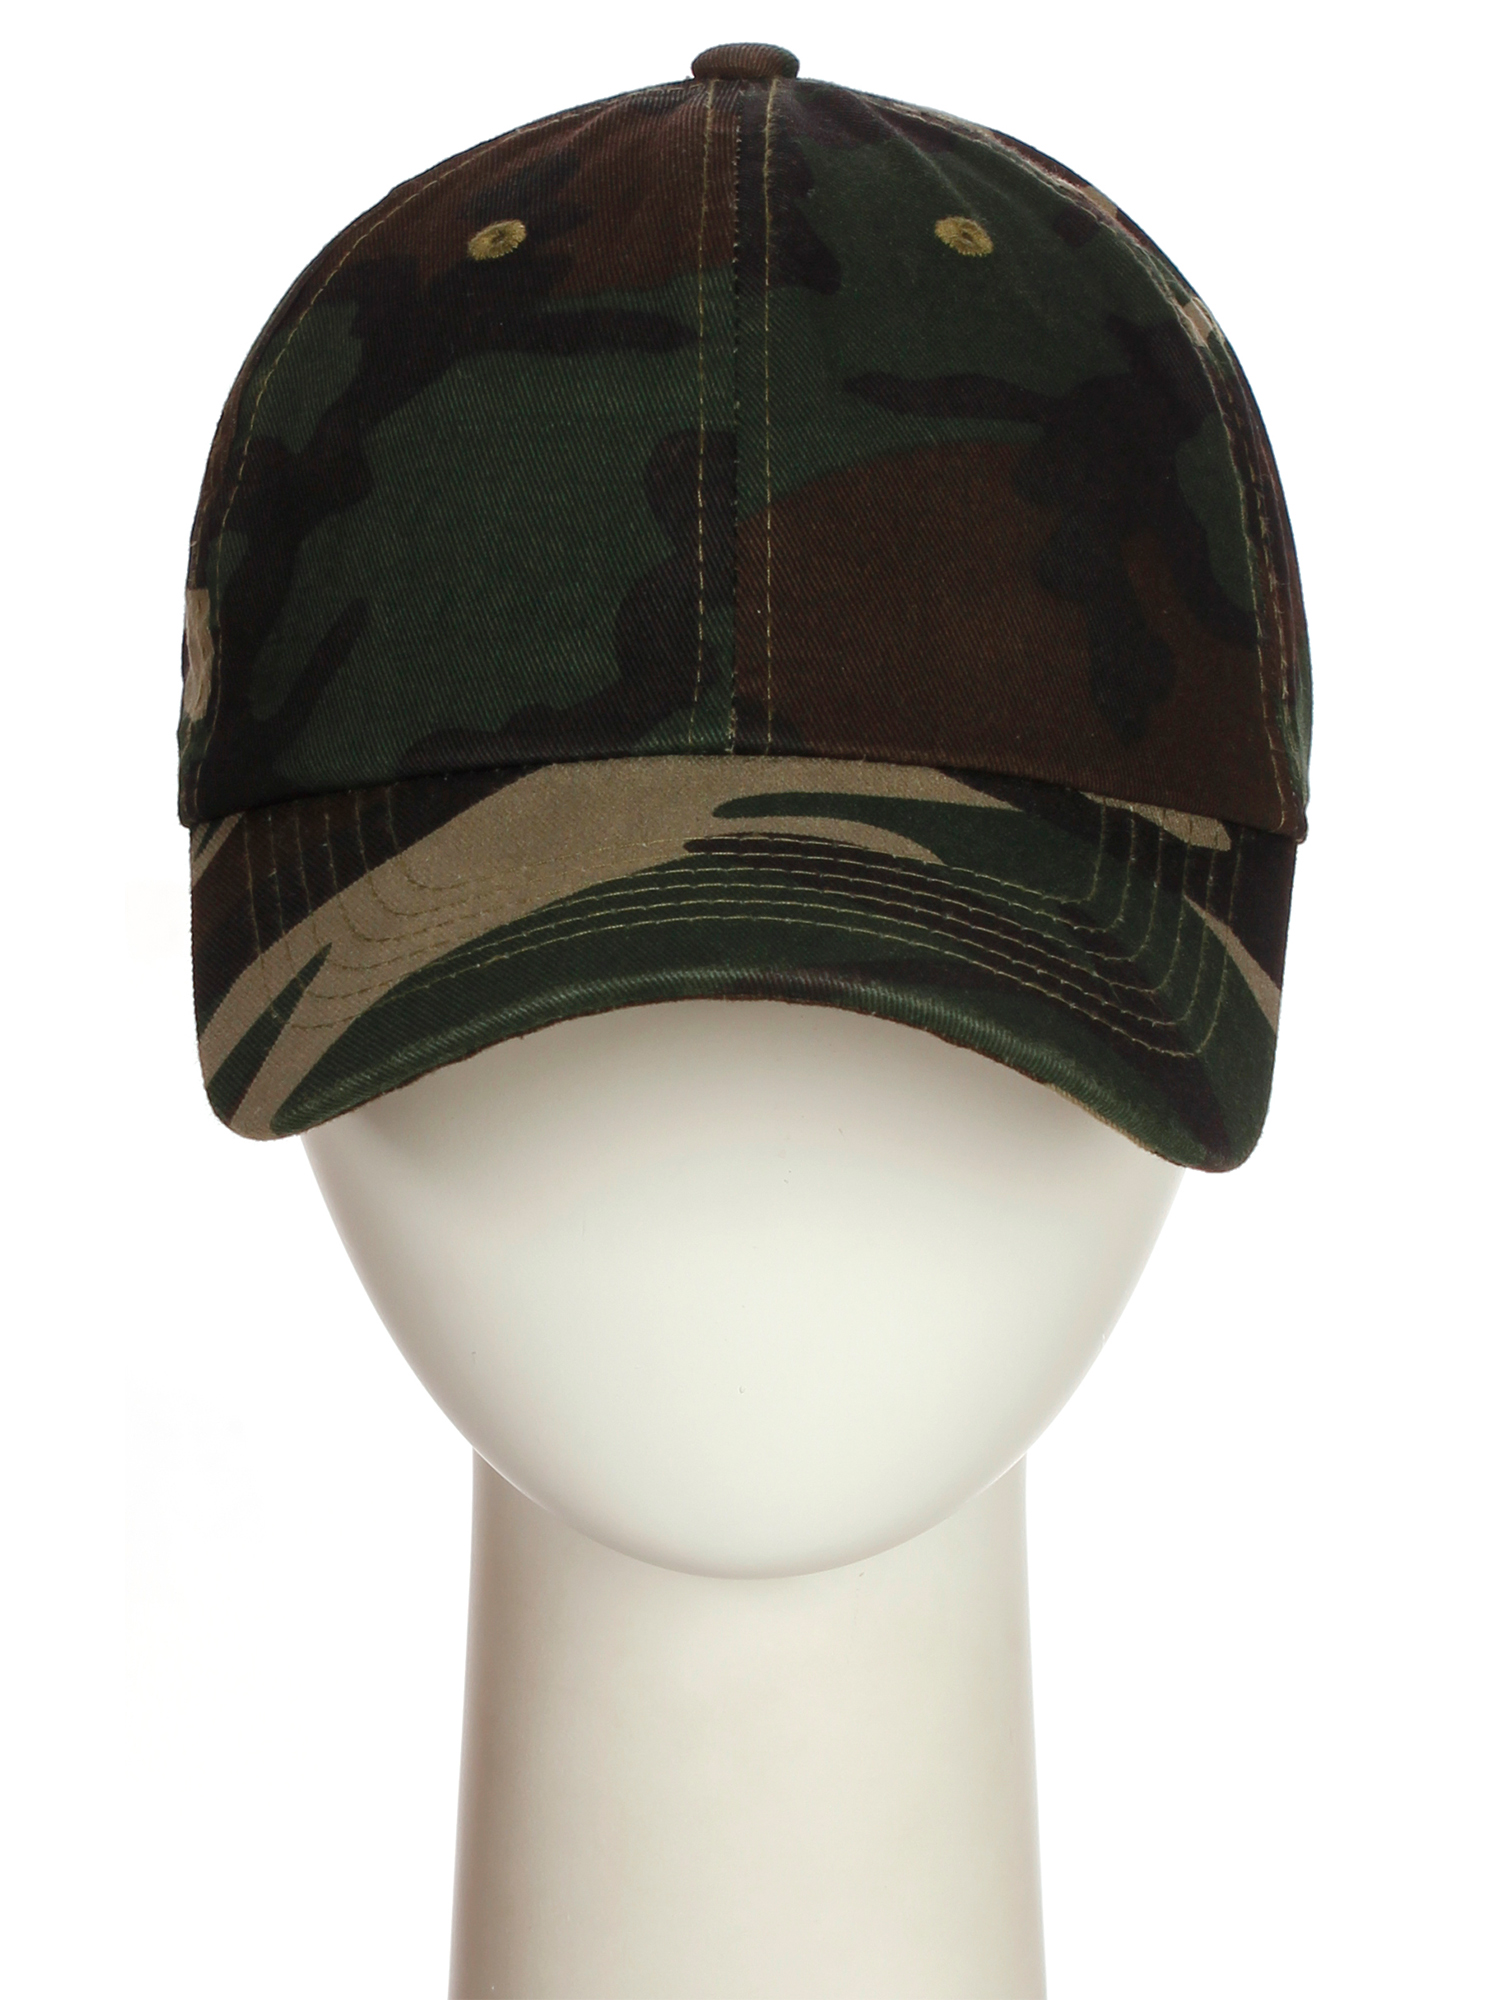 D&I Plain Dad Hat 100% Cotton Unstructured Hat Unisex Strap Cap - 2Pk - Camo Camo - image 3 of 7